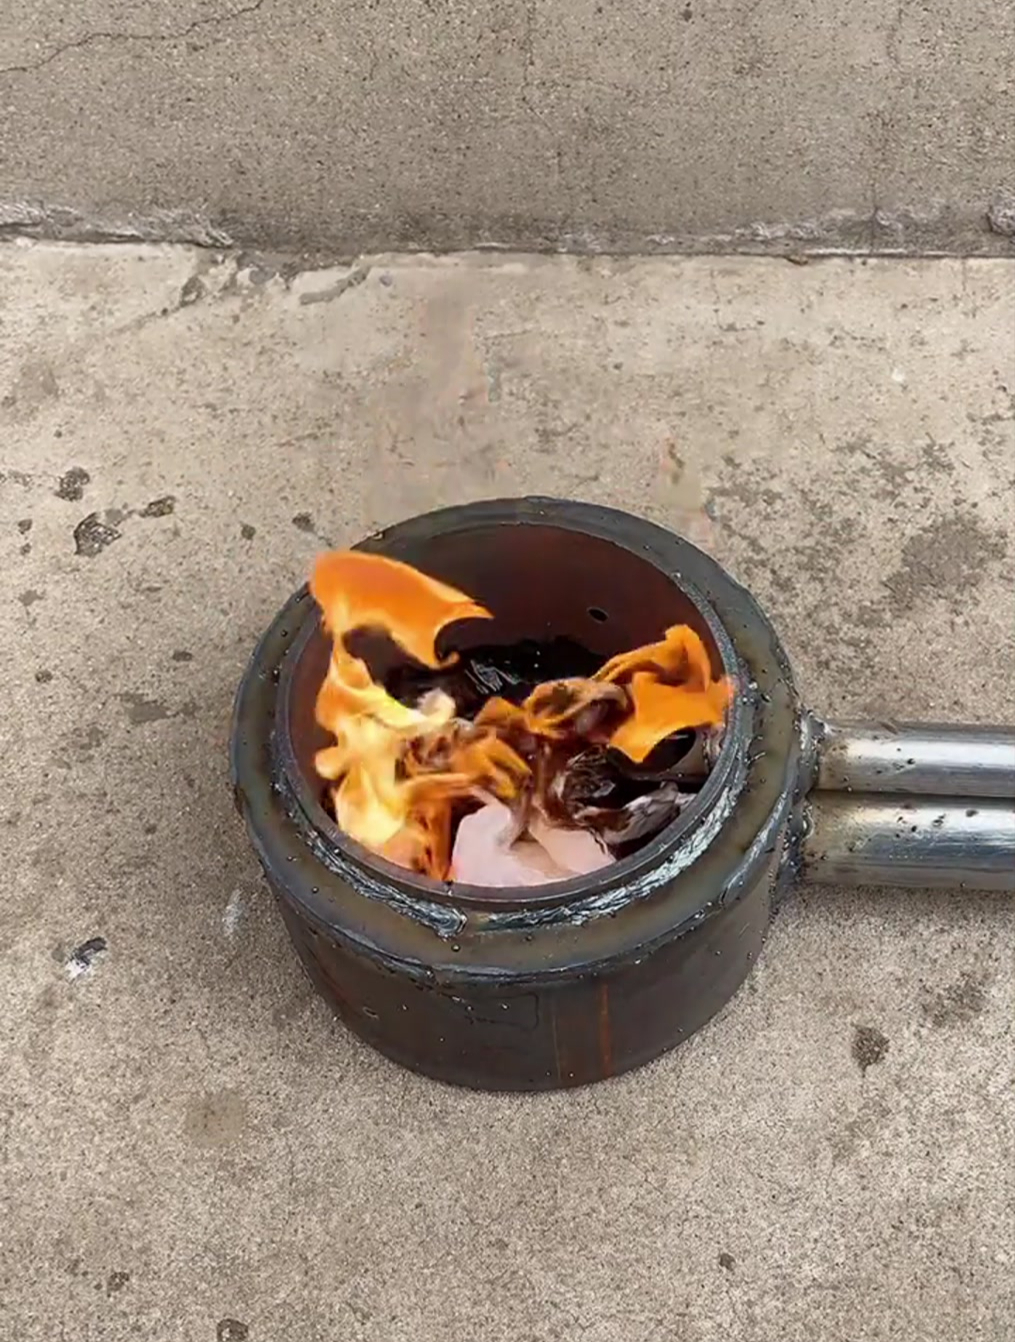 烧废机油炉子的做法图片